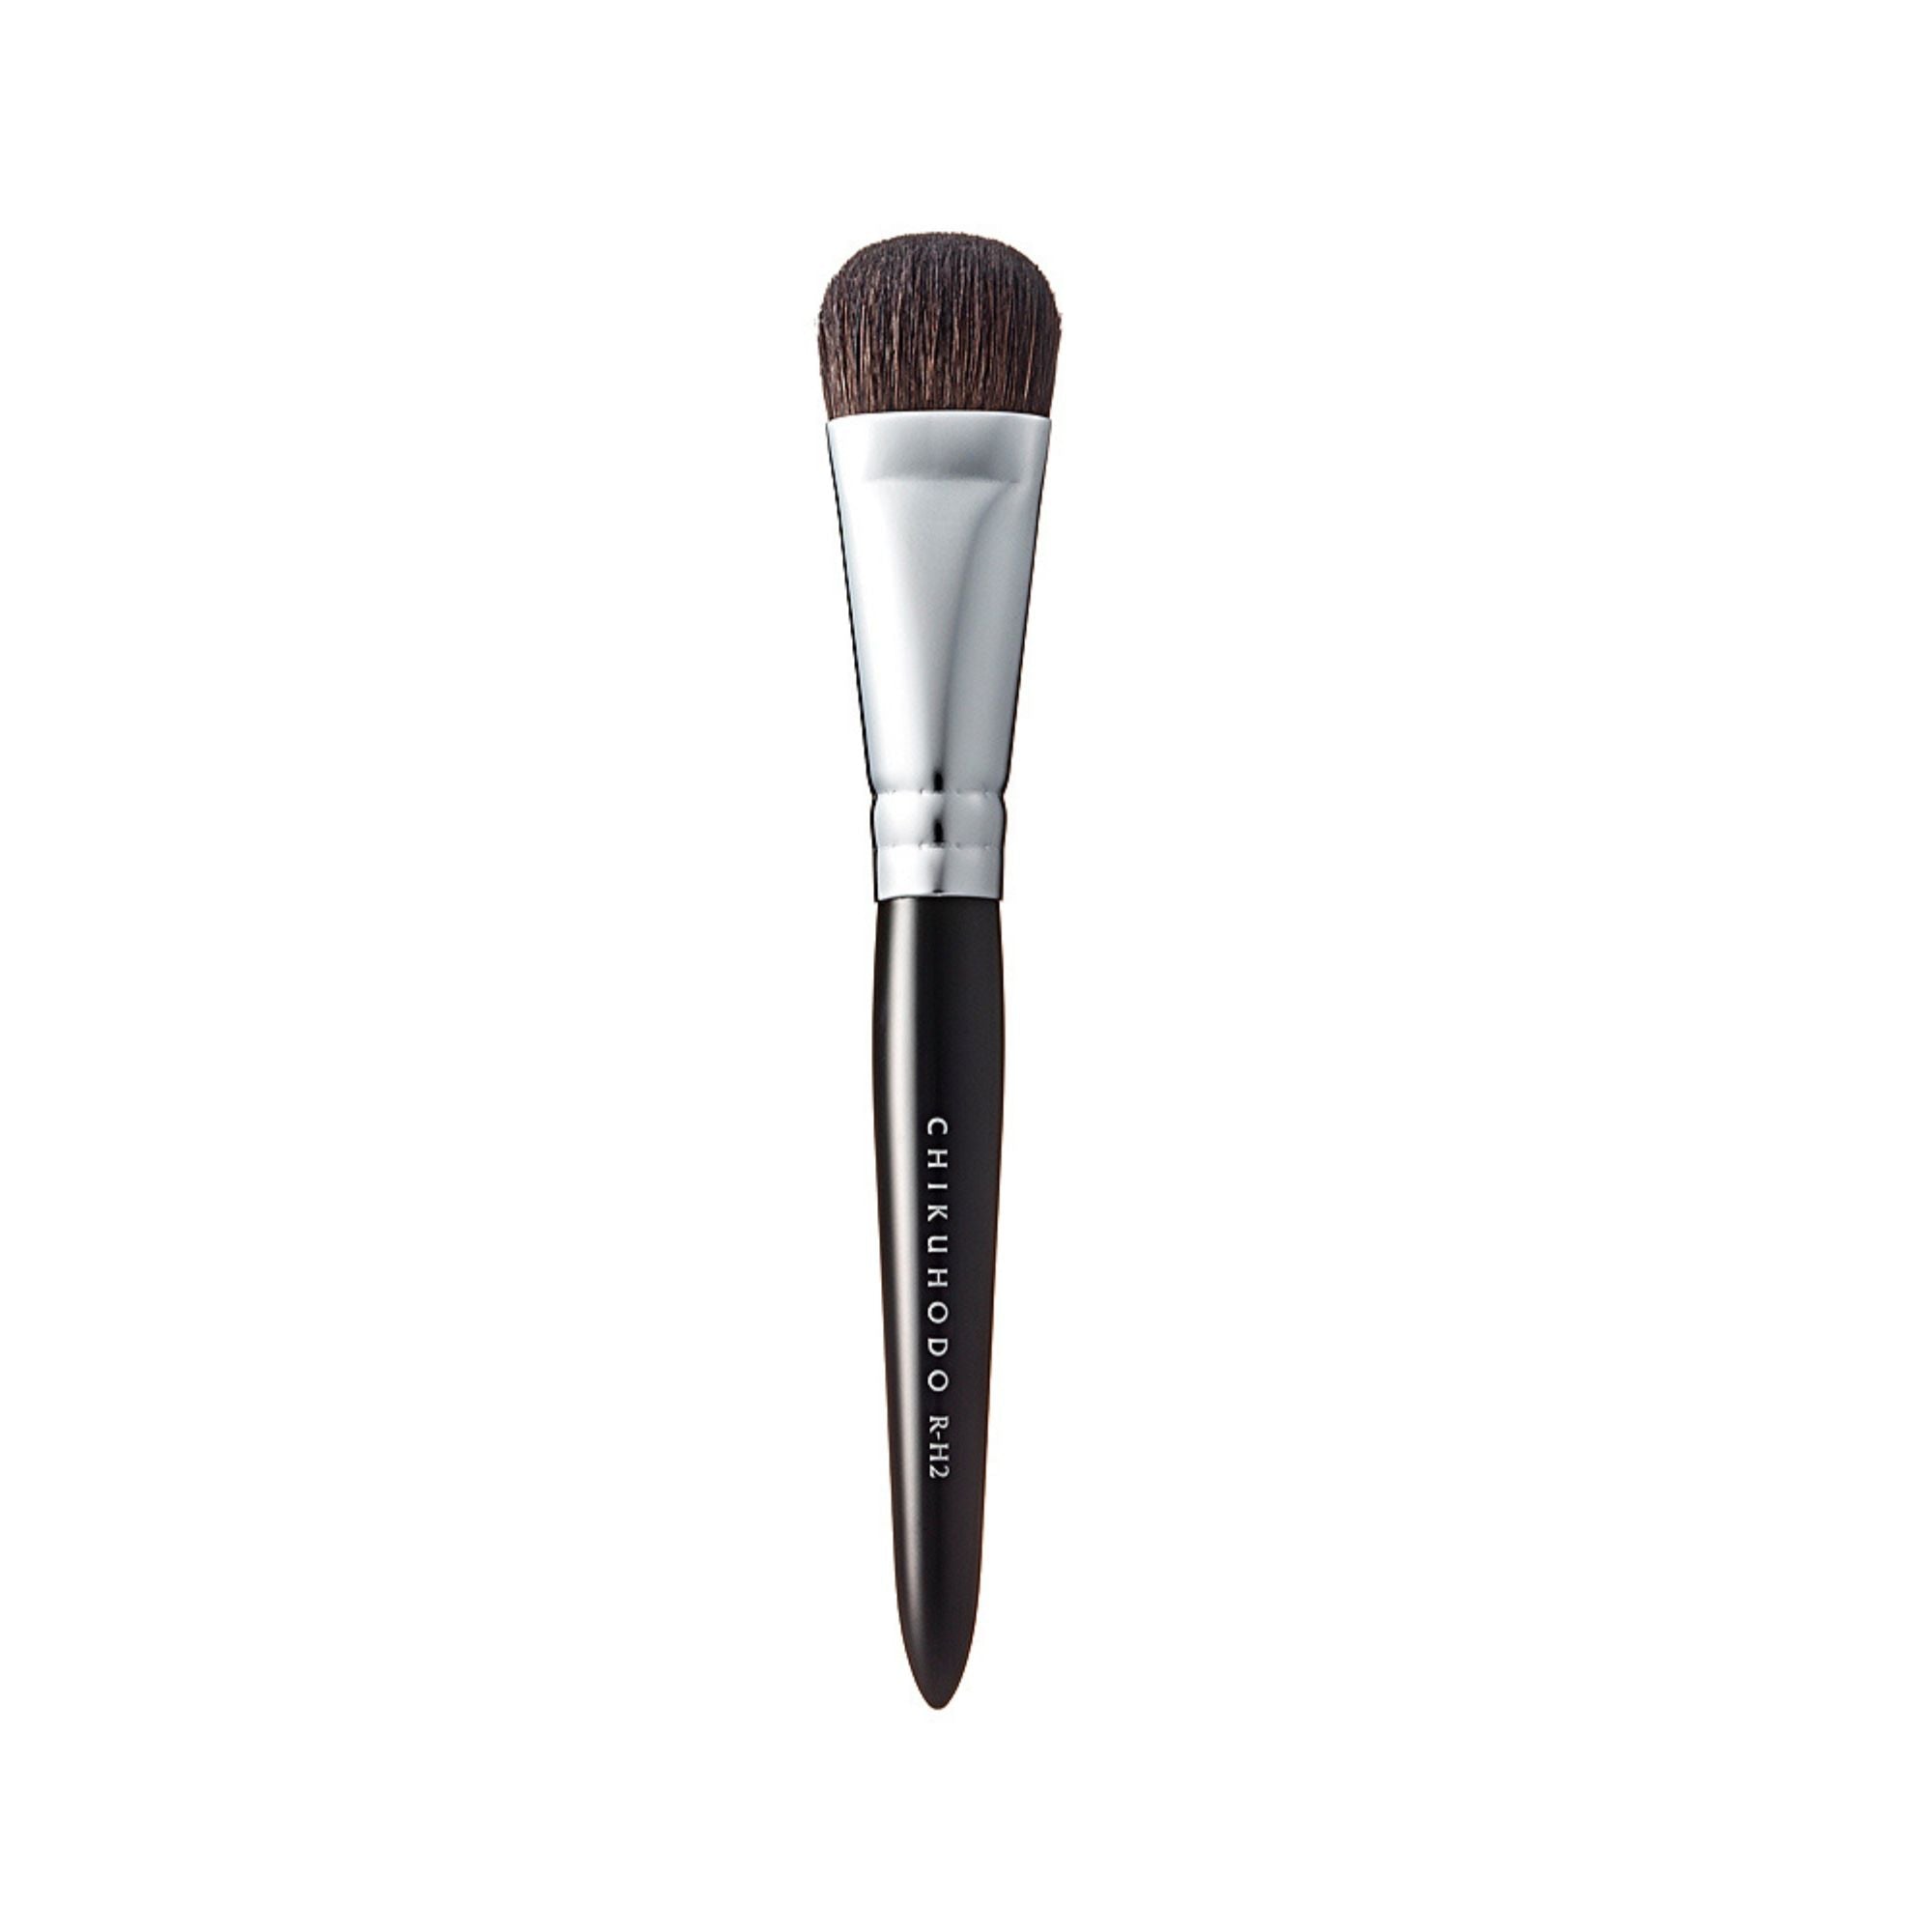 Chikuhodo RR-H2 Highlight Brush, Regular Series (RR-H2 Red, R-H2 Black) - Fude Beauty, Japanese Makeup Brushes